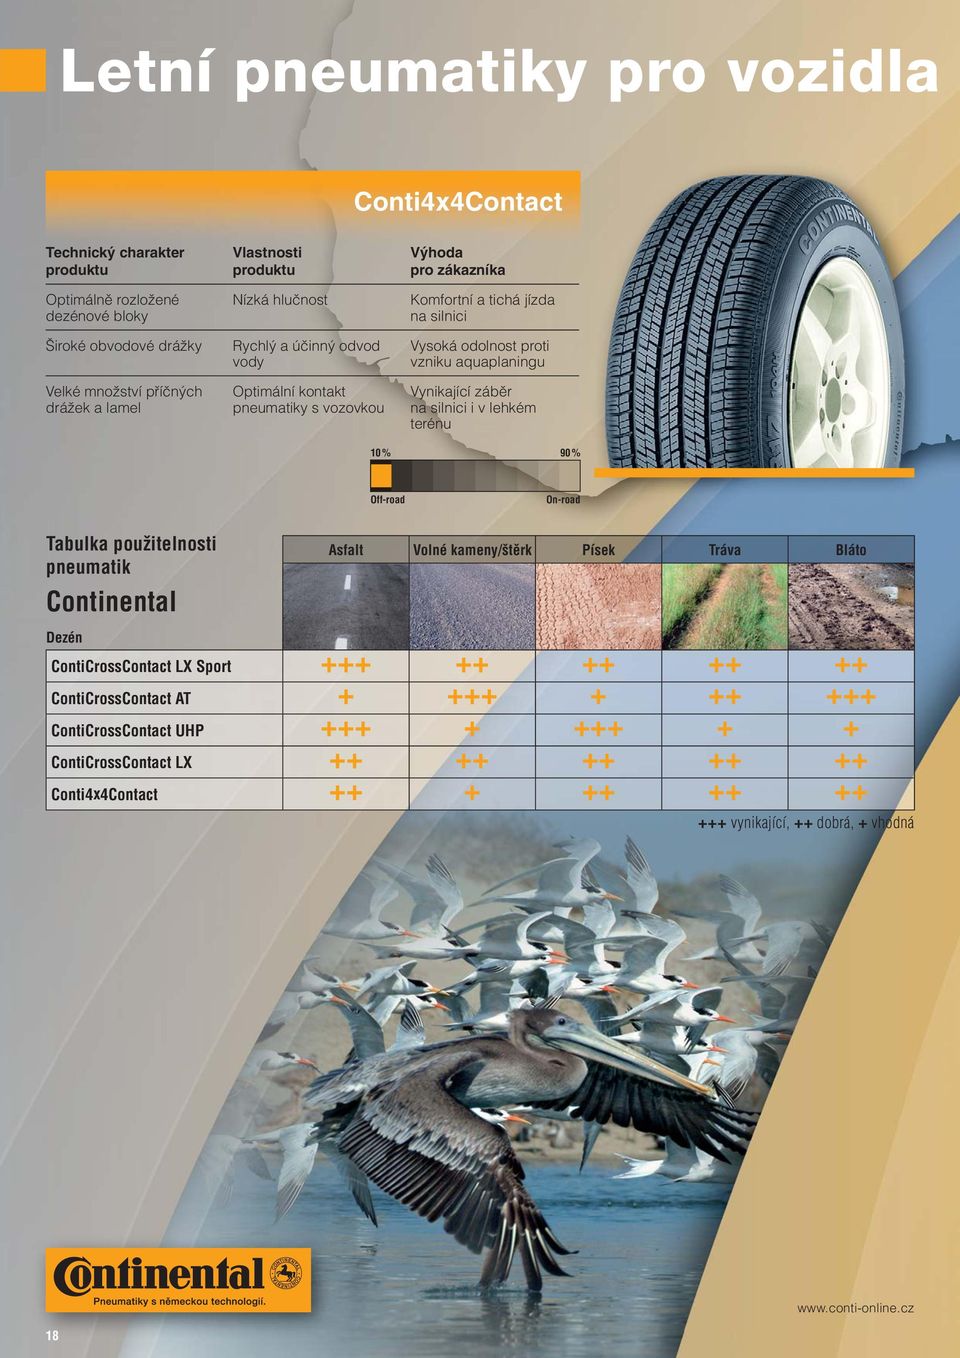 % 90 % Off-road On-road Tabulka použitelnosti pneumatik Continental Asfalt Volné kameny/štěrk Písek Tráva Bláto Dezén ContiCrossContact LX Sport +++ ++ ++ ++ ++